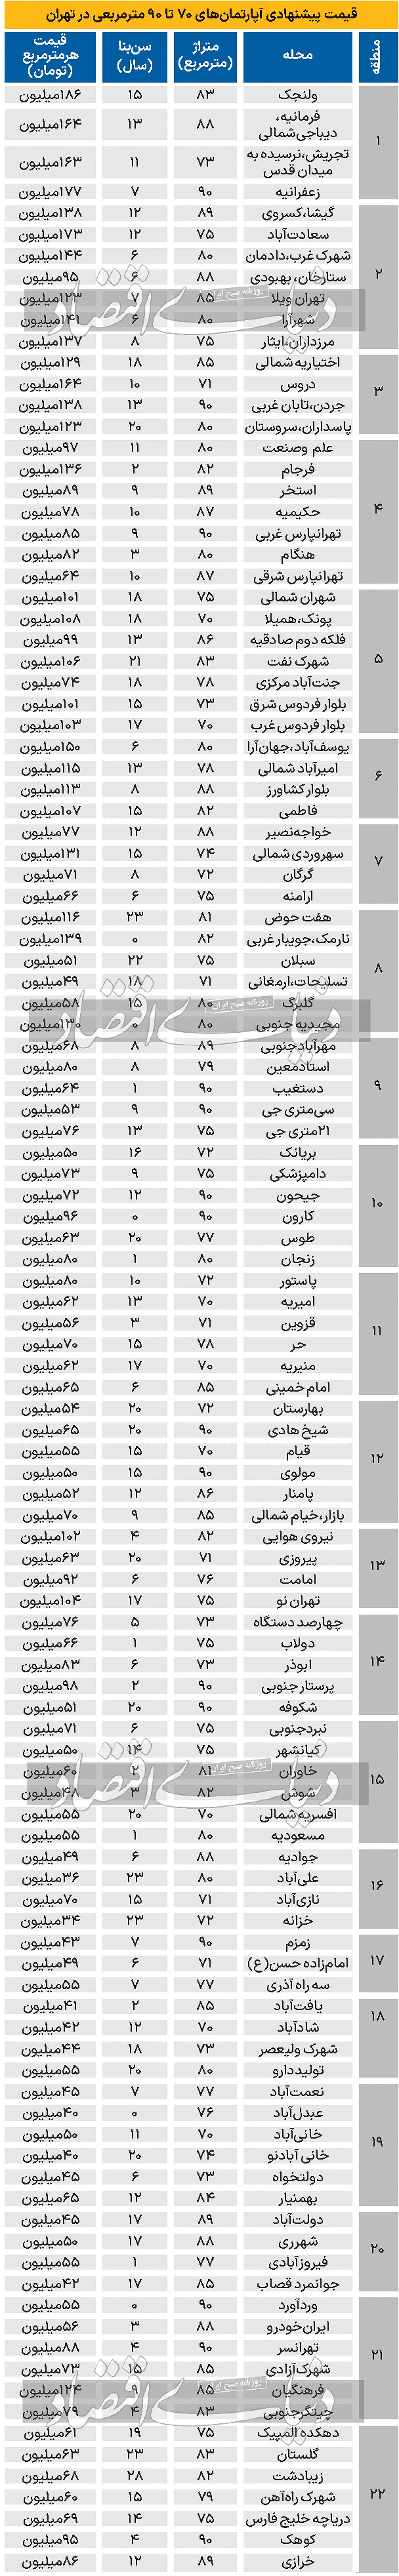 جدول قیمت پیشنهادی آپارتمان در تهران/ فلکه دوم صادقیه متری ۹۹ میلیون تومان